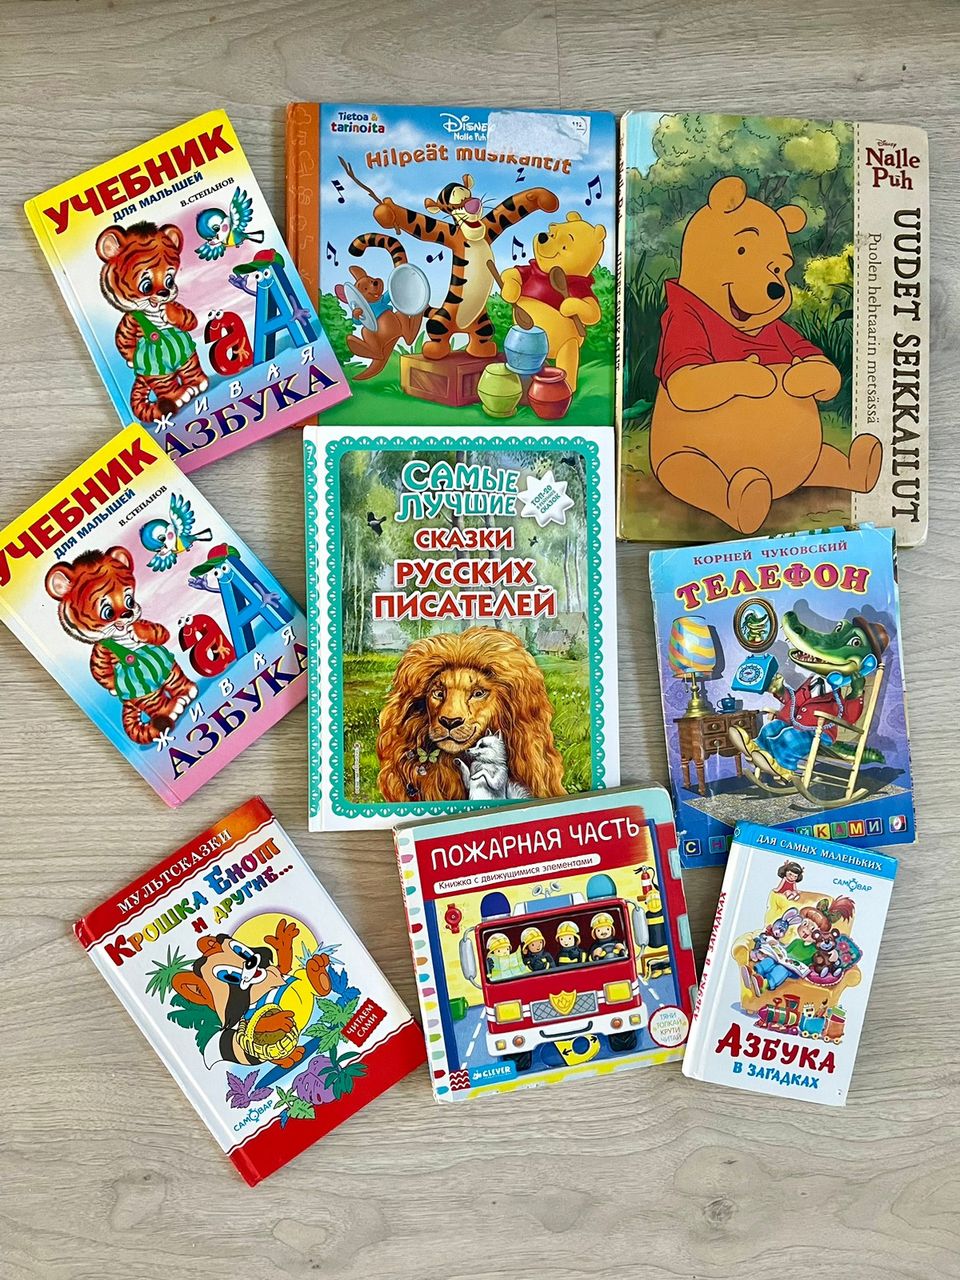 9 kirjat lapselle venäjäksi (2 suomeksi)